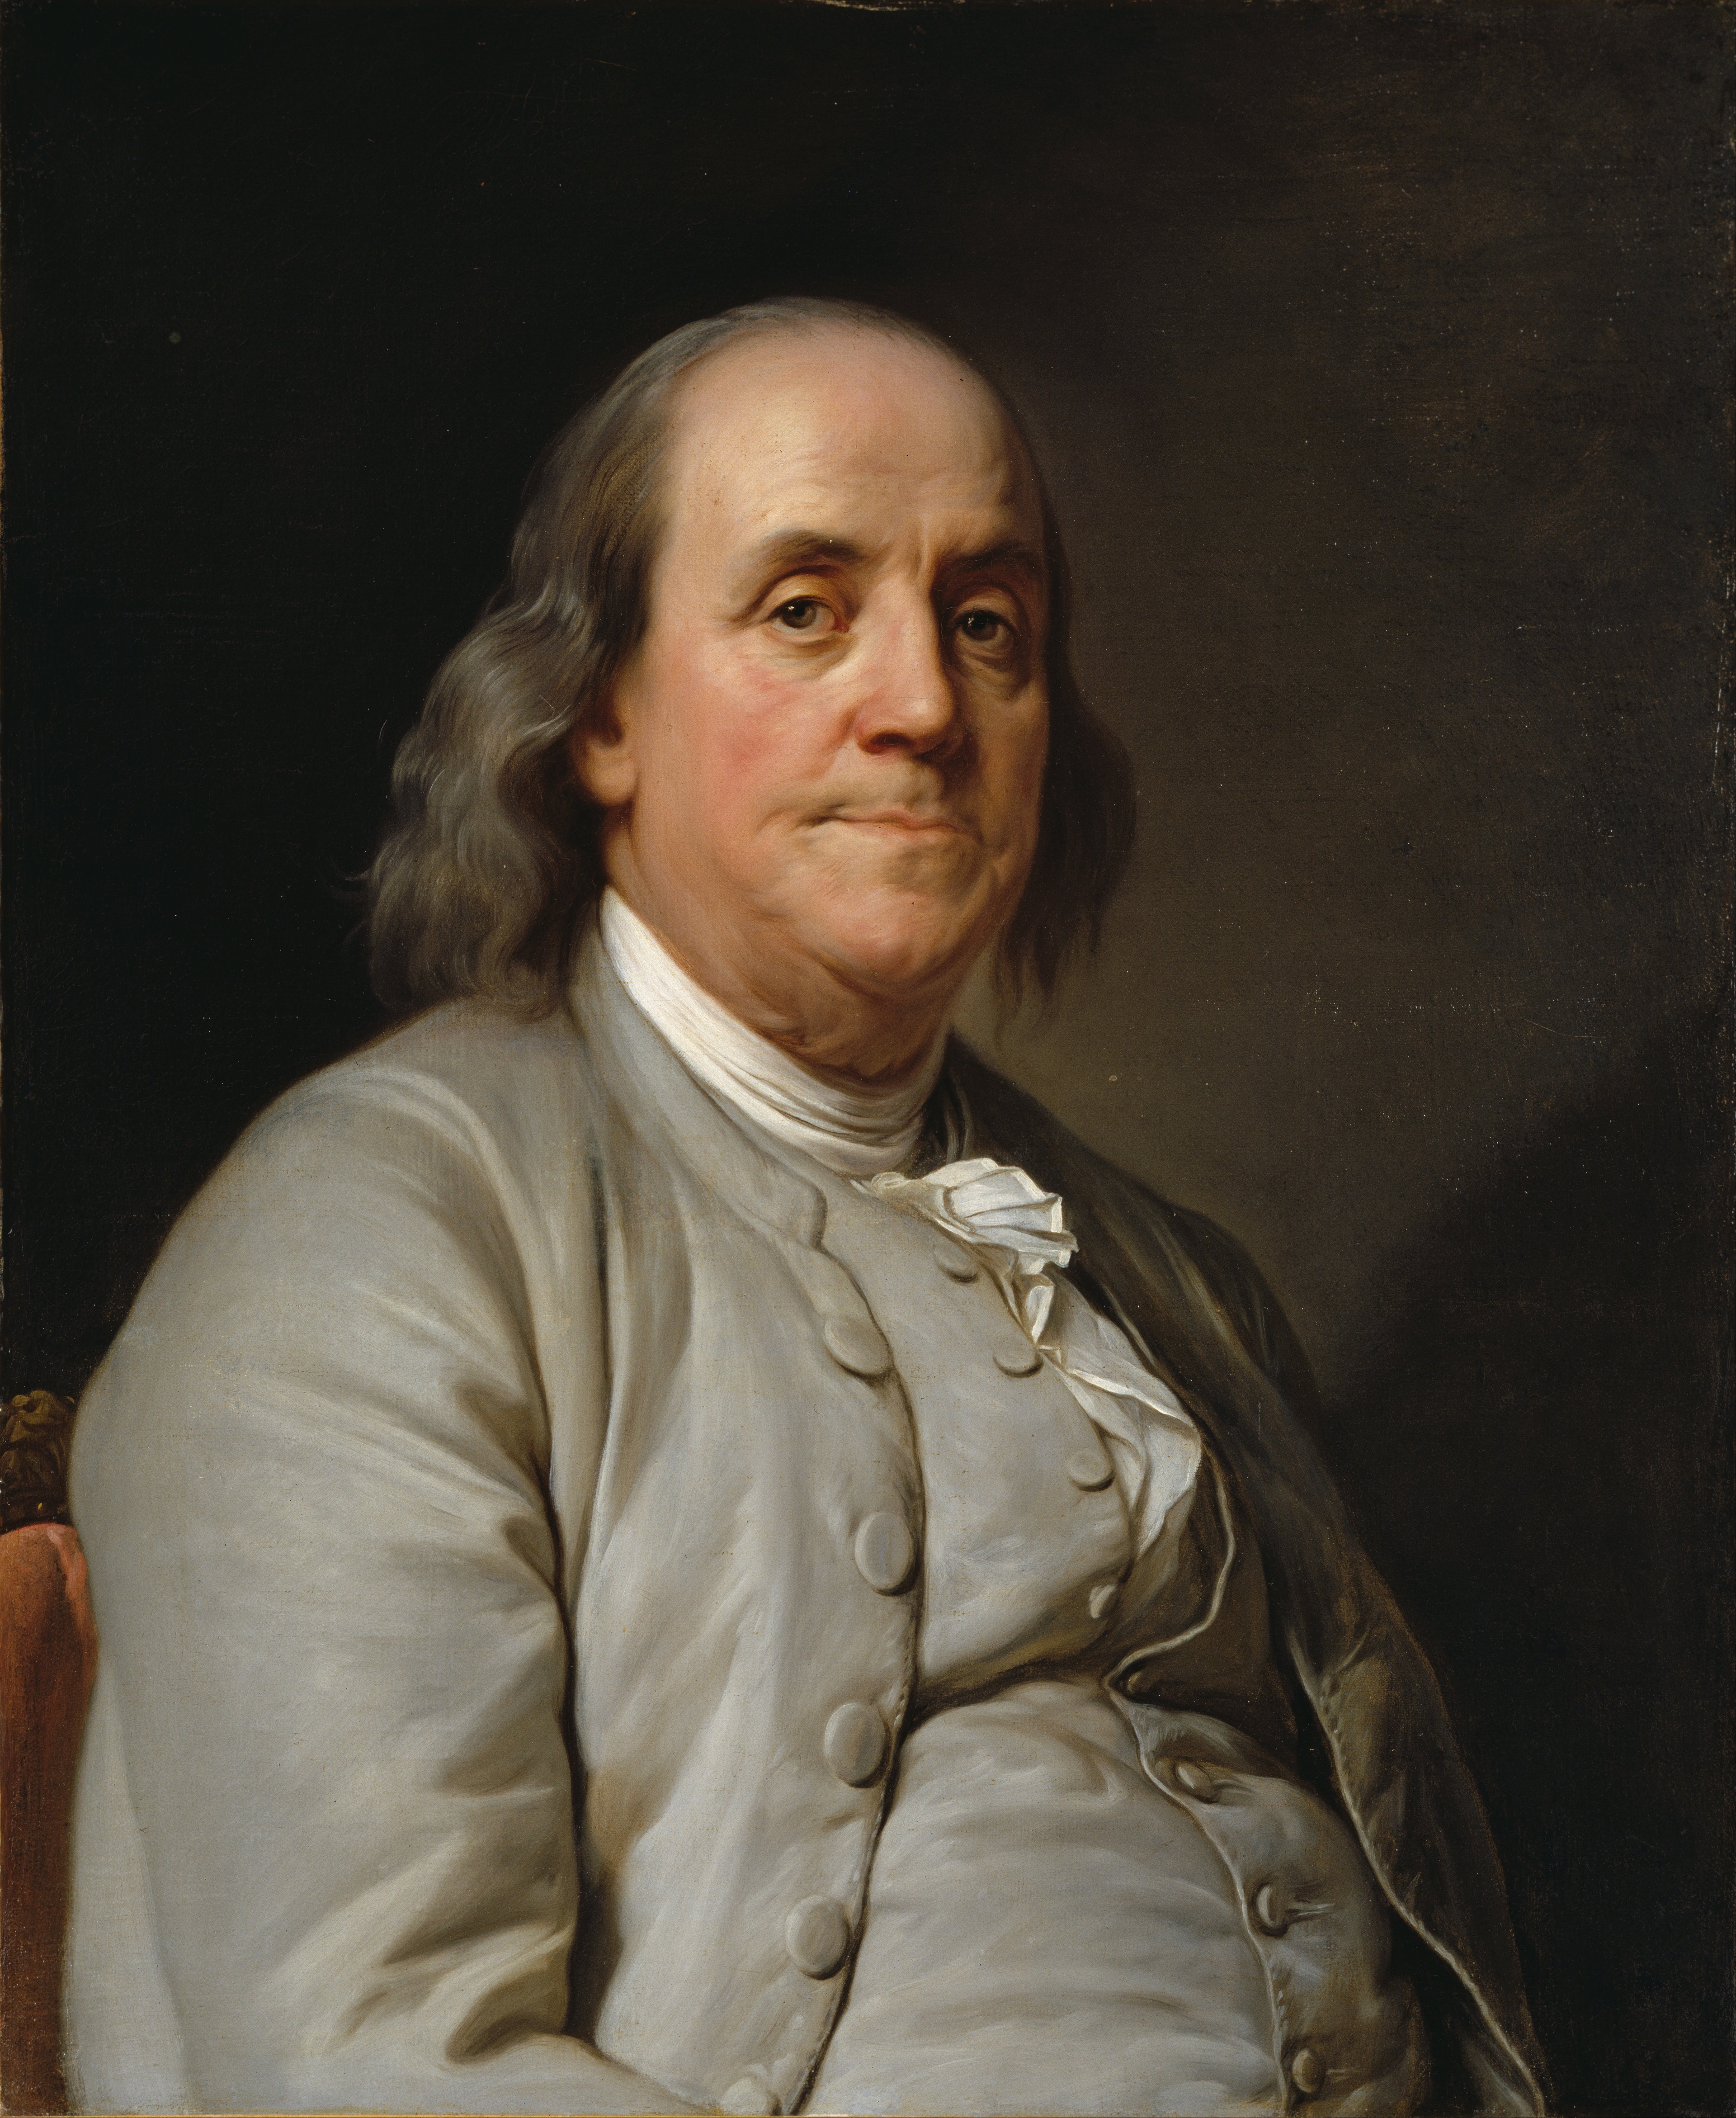 auteur Benjamin Franklin de la citation Soyez en guerre avec vos vices, en paix avec vos voisins, et laissez chaque nouvelle année vous trouver un homme meilleur.